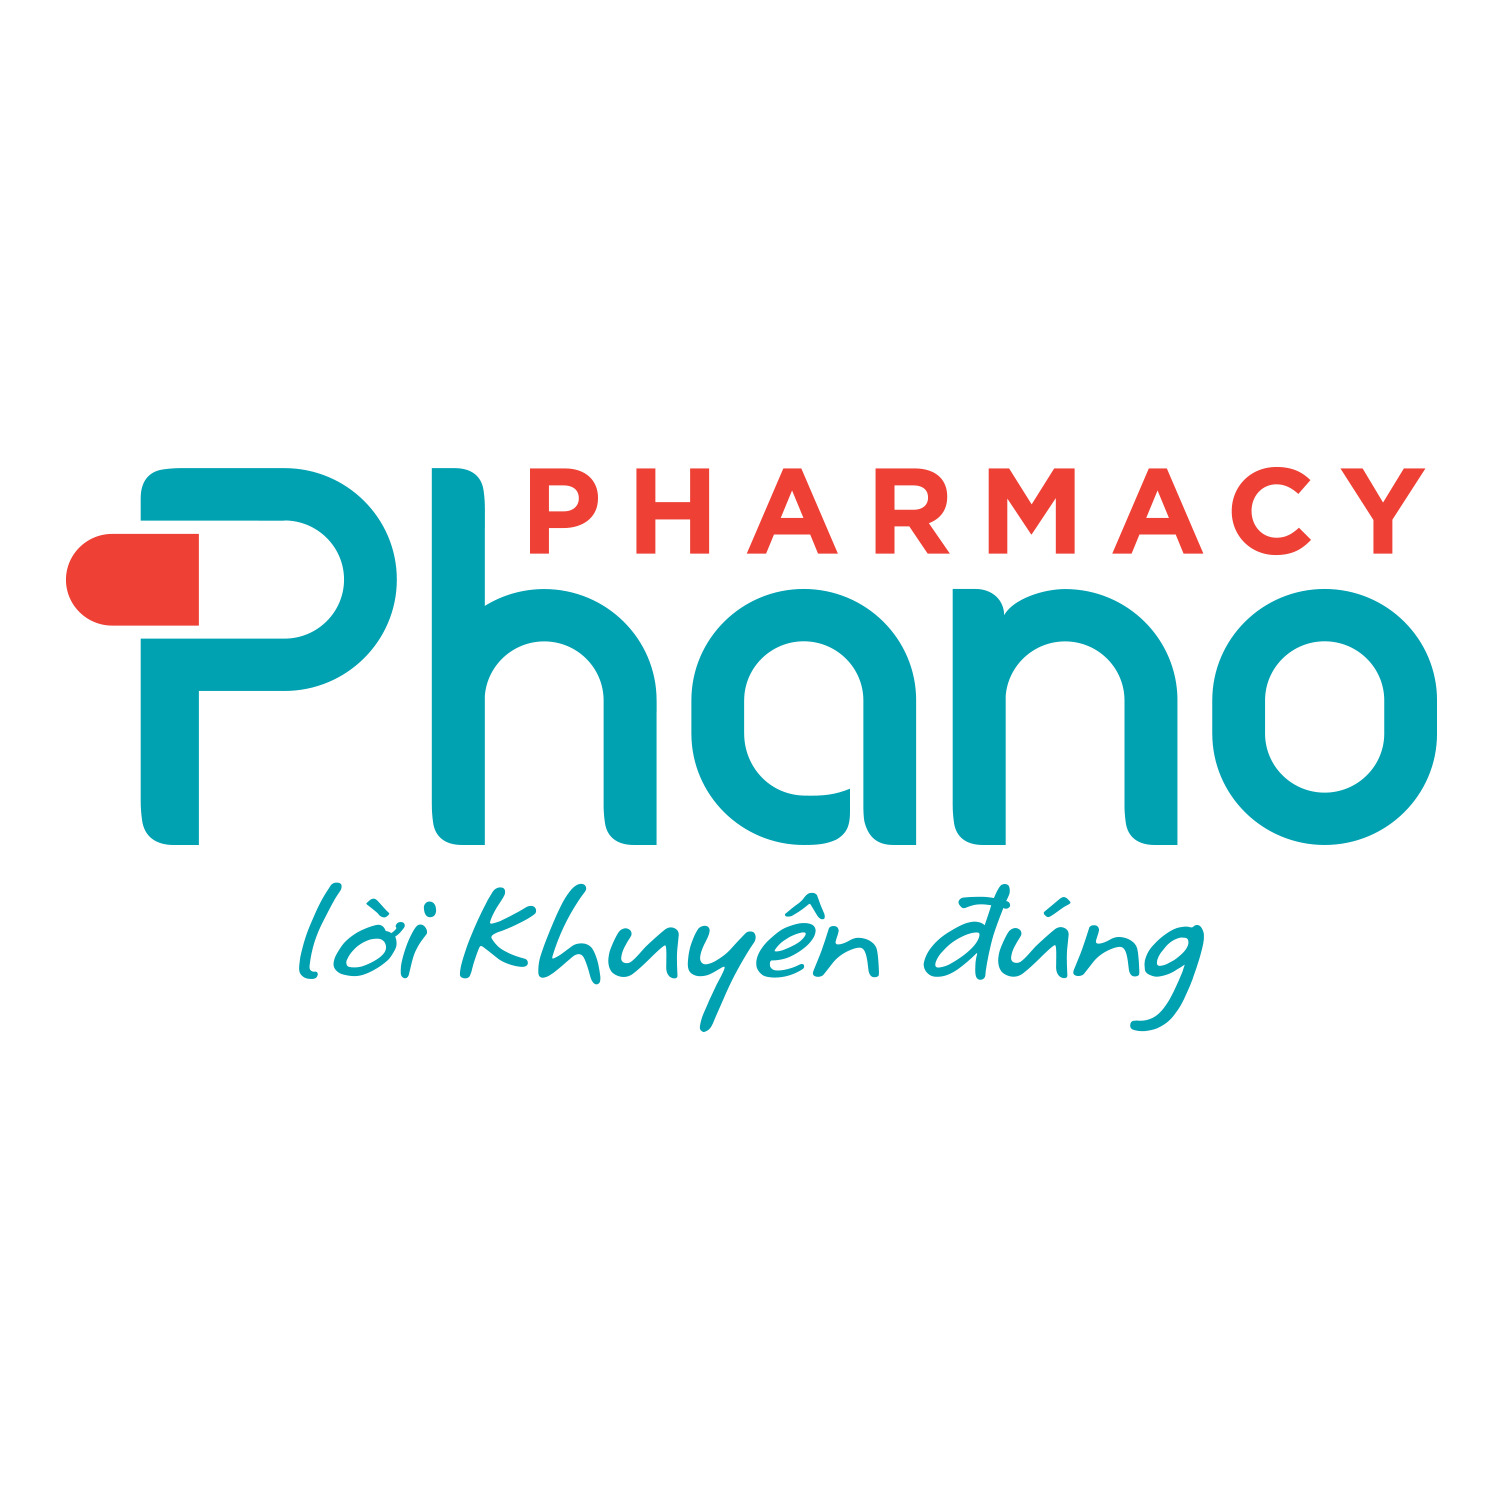 Chuỗi nhà thuốc Phano